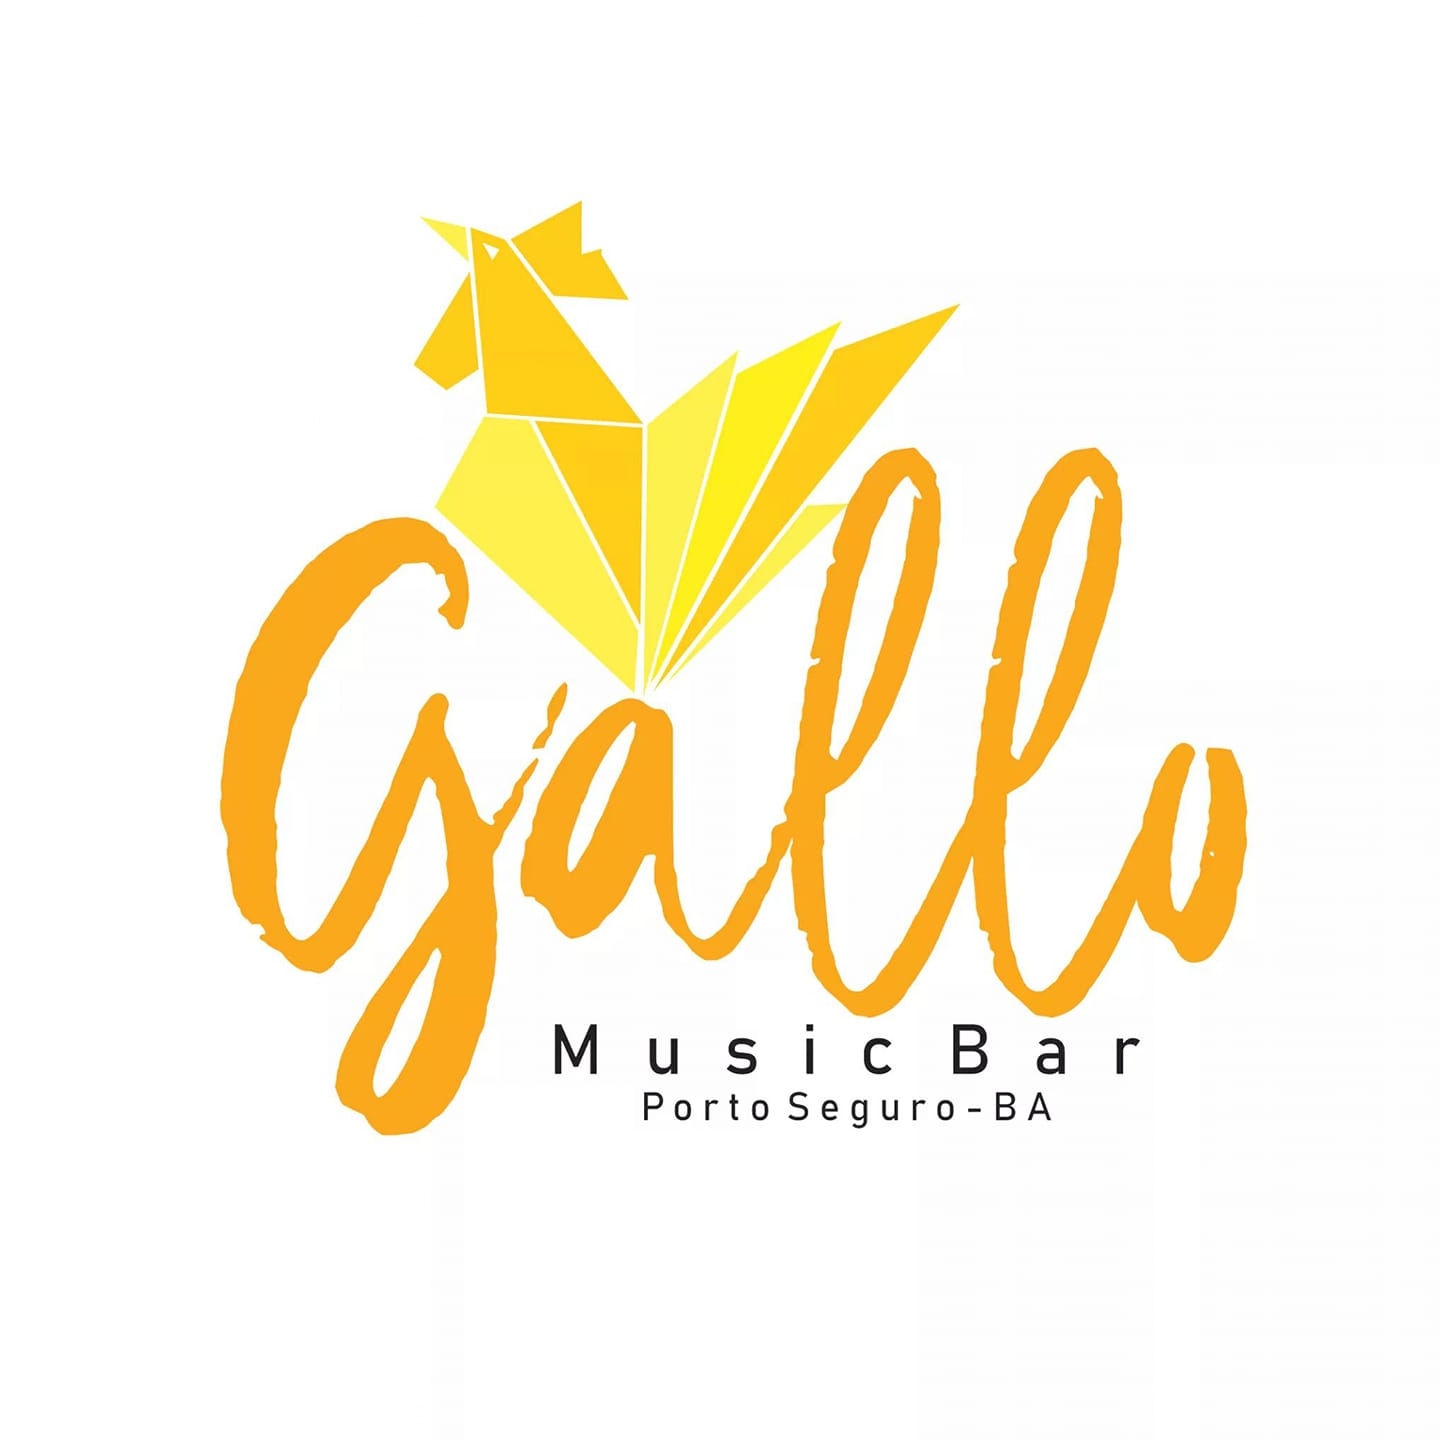 Cartaz  - Gallo Music Bar - Rua 2 de julho, 20B - Casa da Lenha, Sexta-feira 22 de Novembro de 2019